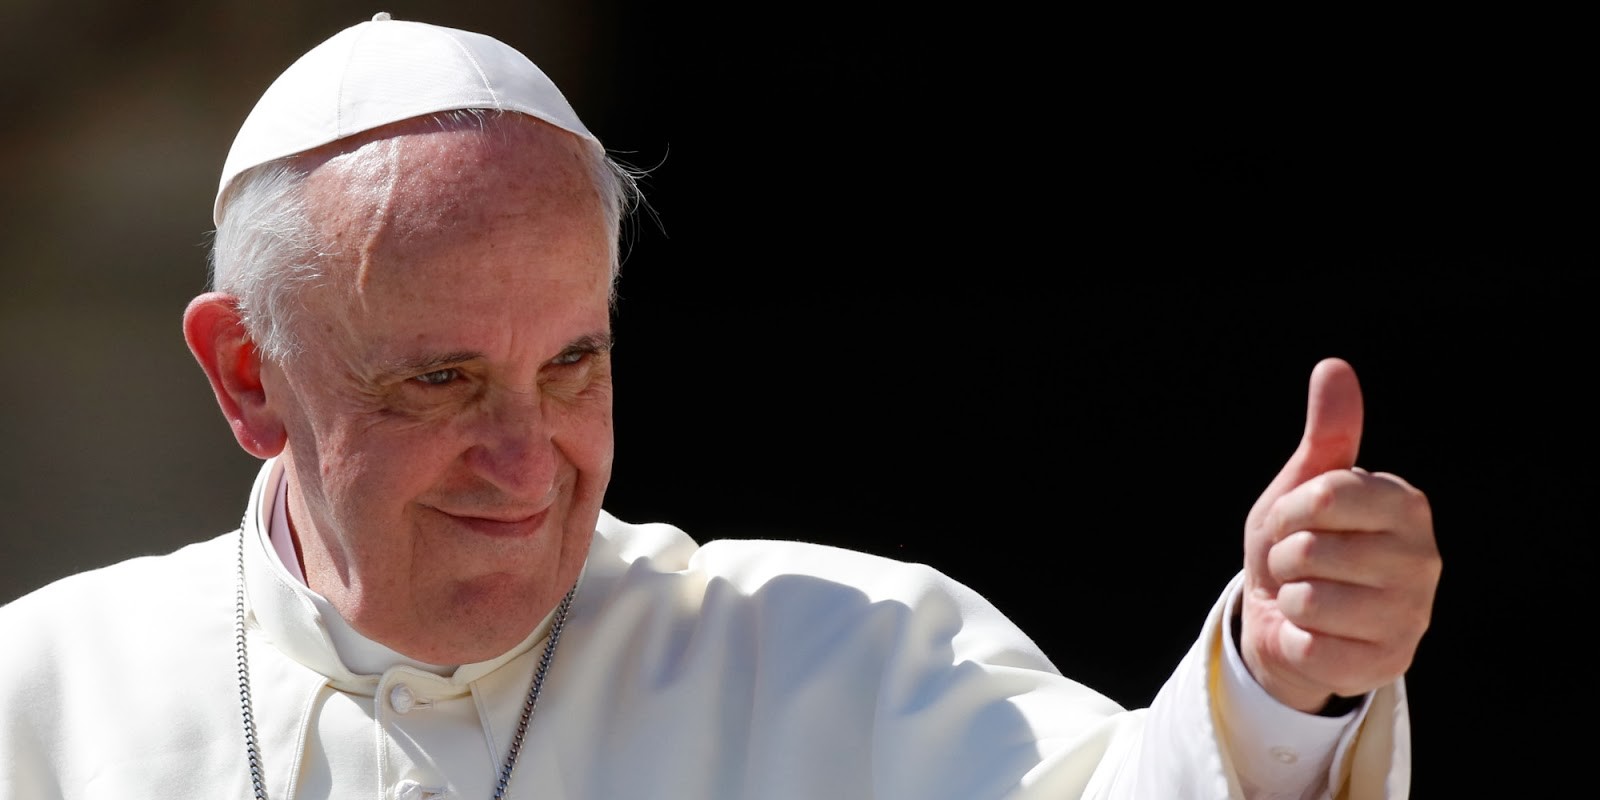 El papa Francisco está actualizando su encíclica “Laudato si” sobre el cuidado del medio ambiente